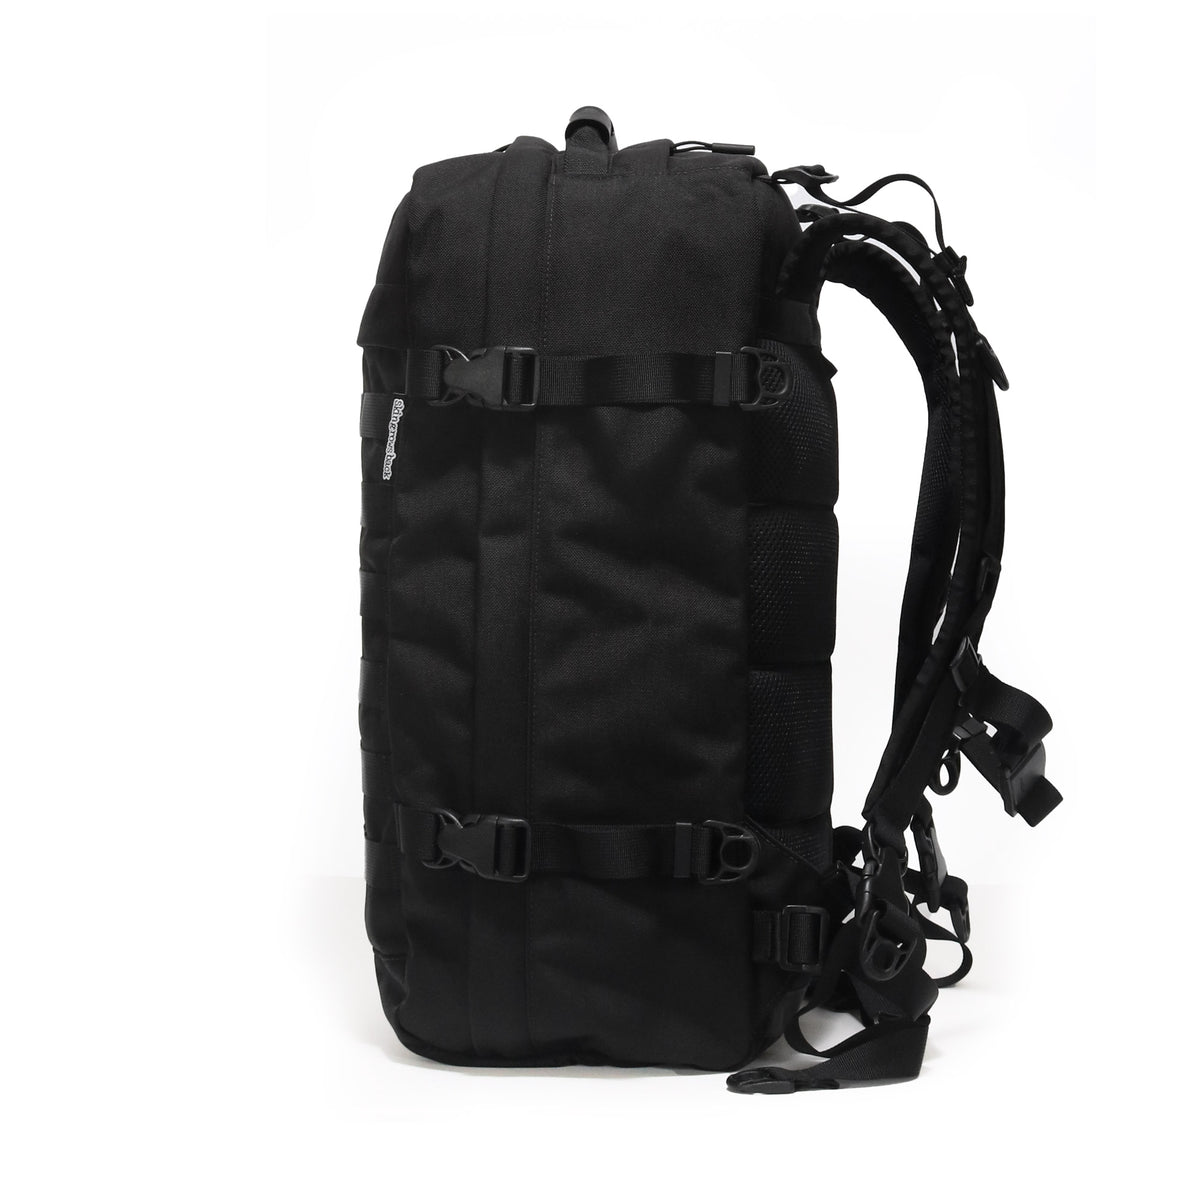 skingrowsback PAK30 30 litre backpack Black